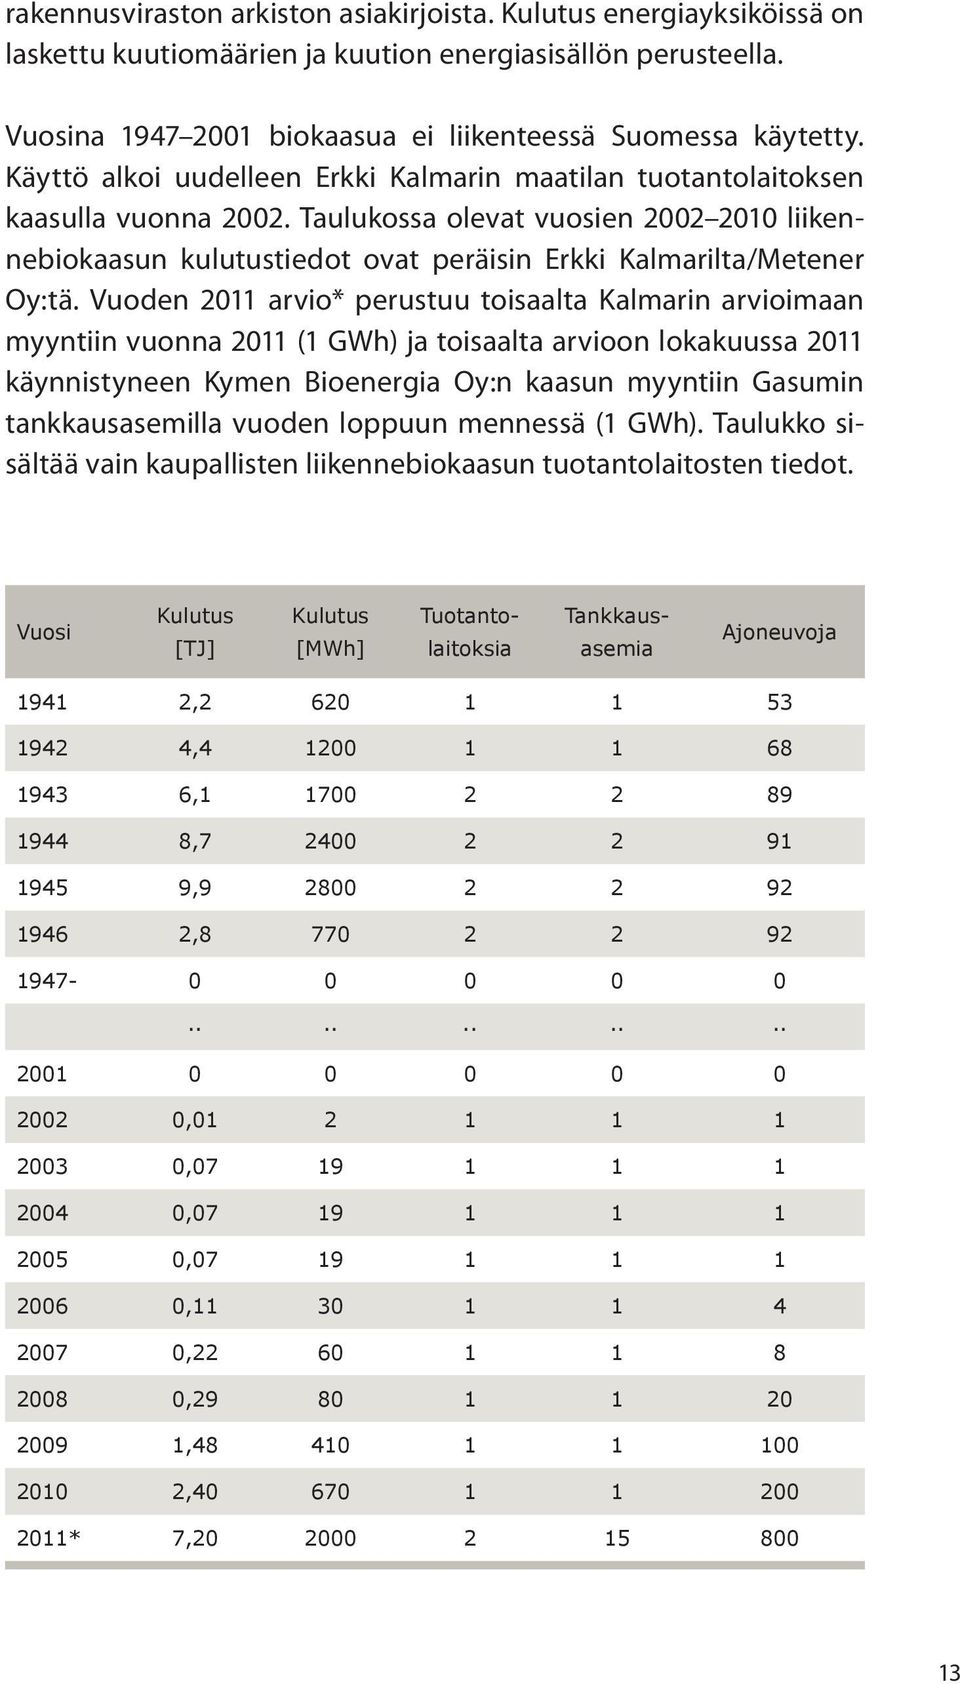 Vuoden 2011 arvio* perustuu toisaalta Kalmarin arvioimaan myyntiin vuonna 2011 (1 GWh) ja toisaalta arvioon lokakuussa 2011 käynnistyneen Kymen Bioenergia Oy:n kaasun myyntiin Gasumin